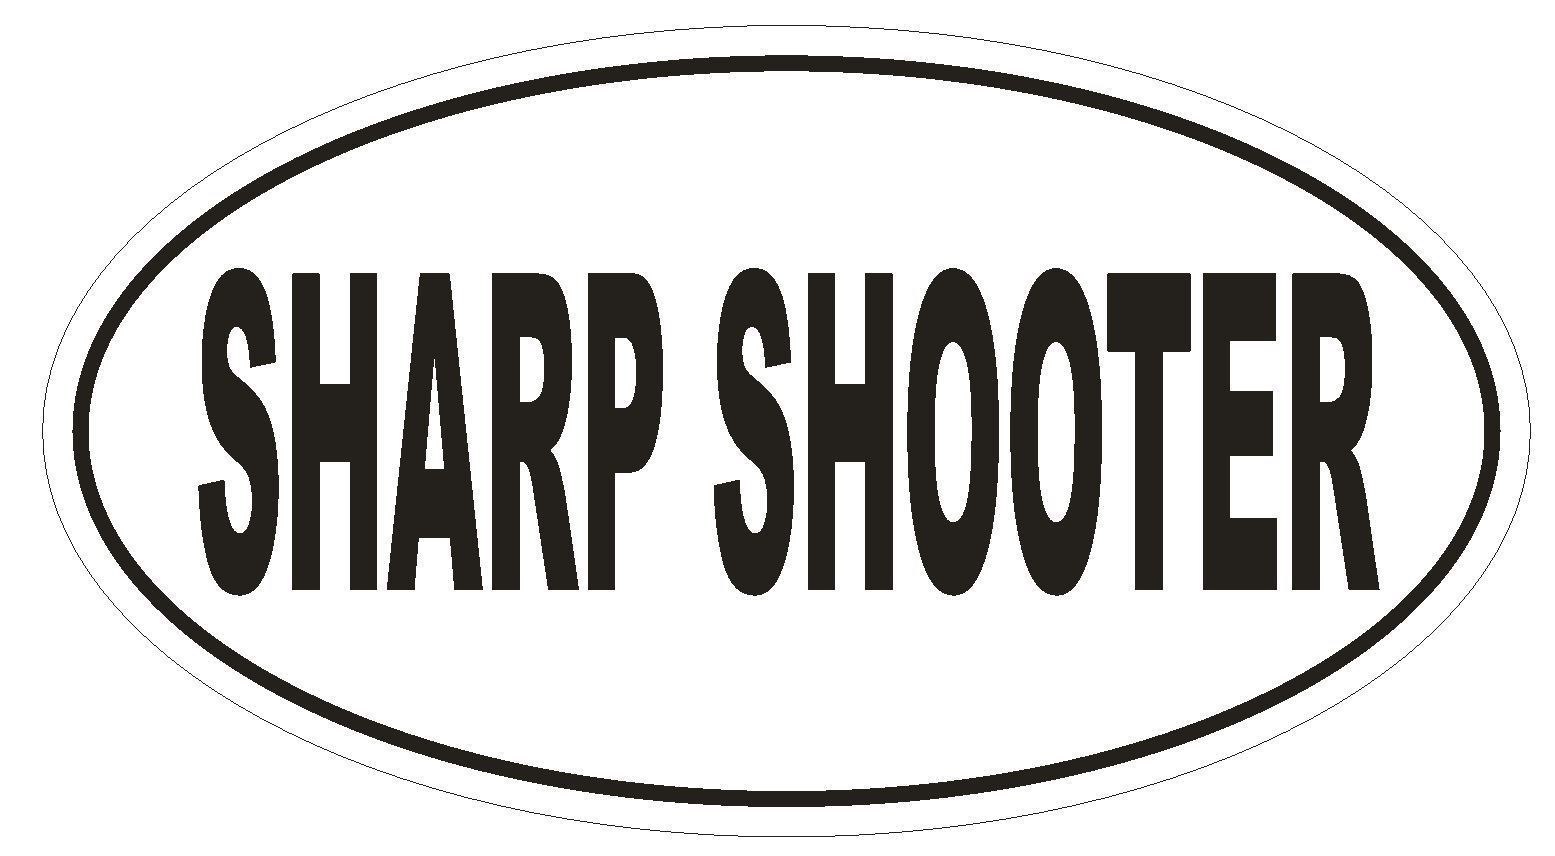 SHARP SHOOTER Oval Bumper Sticker or Helmet Sticker D1893 Euro Oval - $1.39 - $75.00